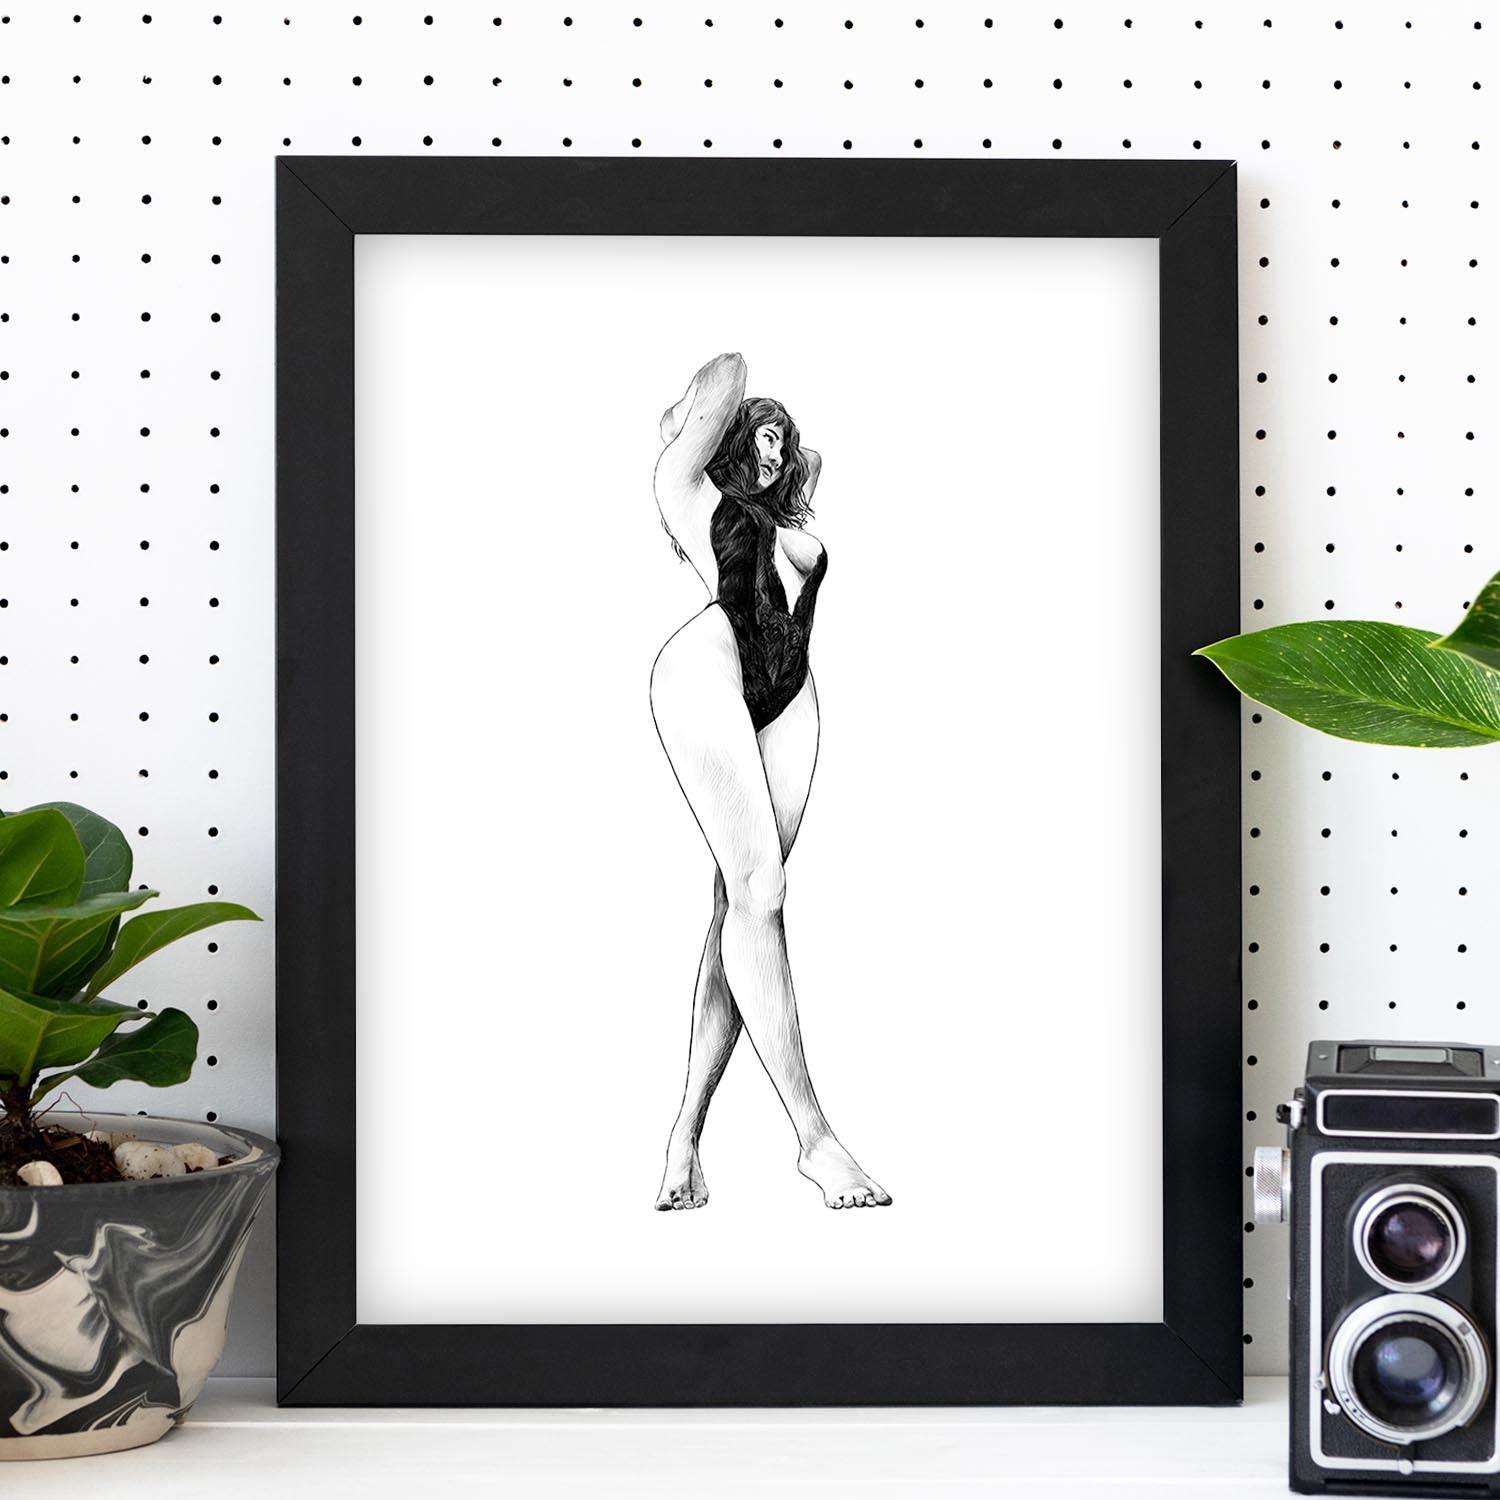 Posters eróticos. Lámina De pie 2 dibujada con imágenes sensuales del cuerpo femenino.-Artwork-Nacnic-Nacnic Estudio SL